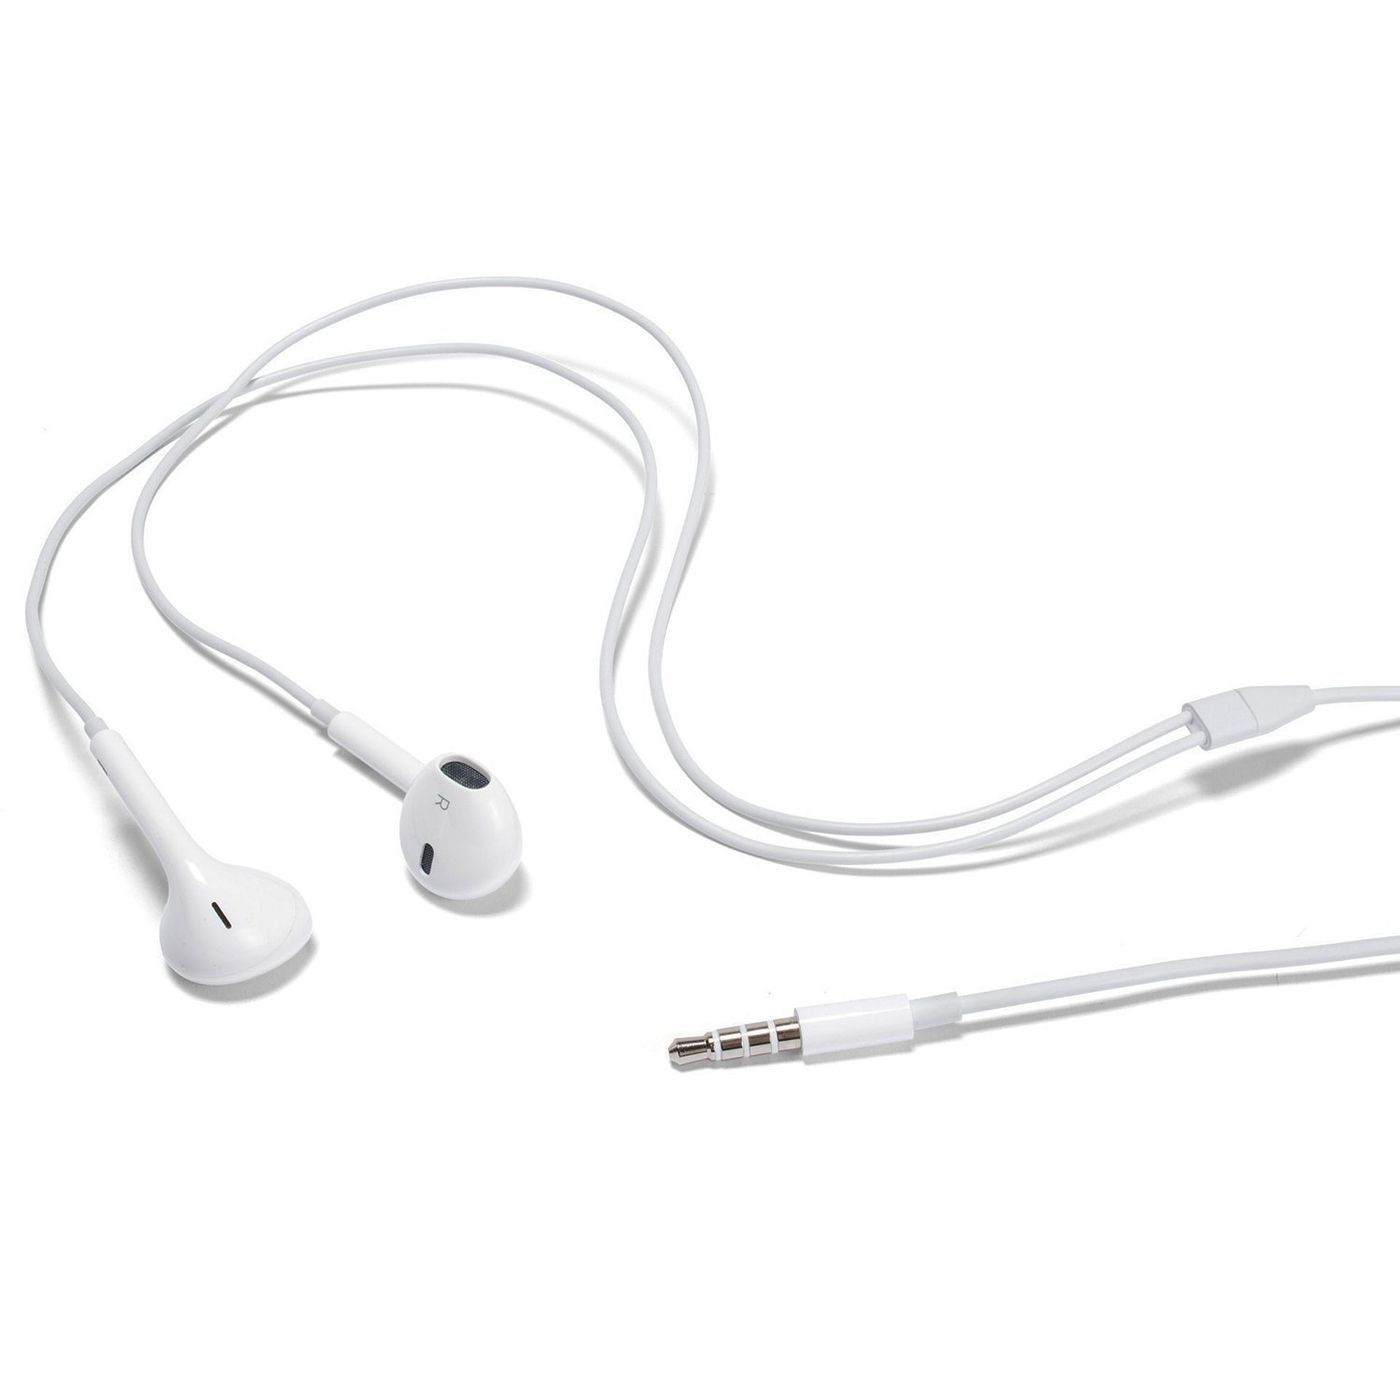 Купить гарнитуру в орле. Наушники Apple Earpods 3.5. Наушники Apple Earpods with 3.5mm Headphone Plug. Проводная гарнитура Apple Earpods (3.5 mm) белый. Наушники с микрофоном Apple Earpods Headphone Plug (mnhf2zm/a).